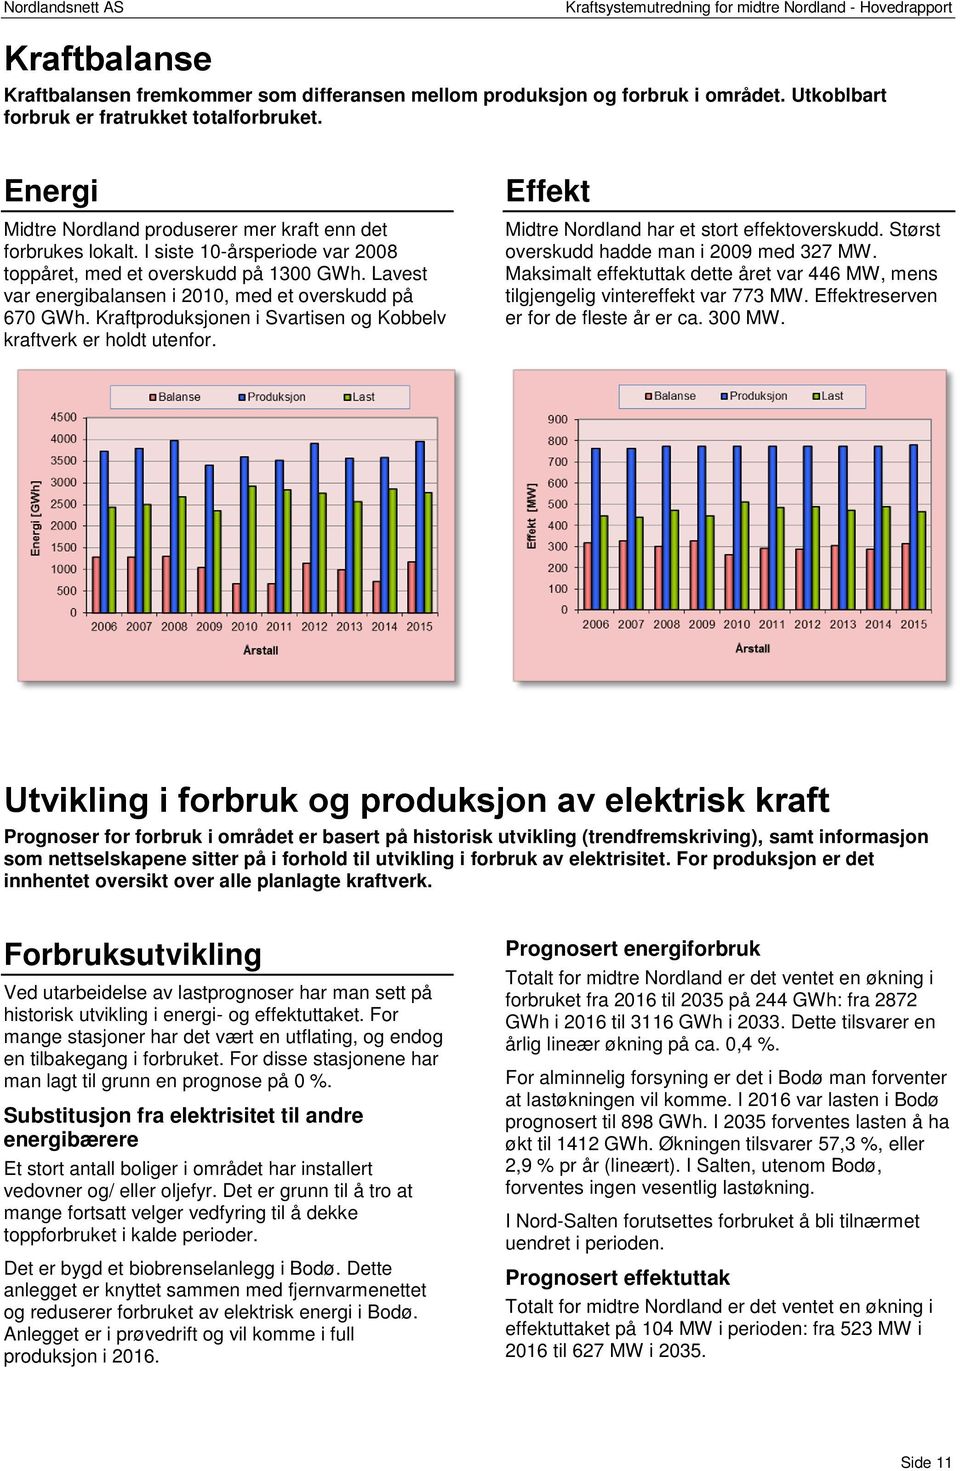 Lavest var energibalansen i 2010, med et overskudd på 670 GWh. Kraftproduksjonen i Svartisen og Kobbelv kraftverk er holdt utenfor. Effekt Midtre Nordland har et stort effektoverskudd.